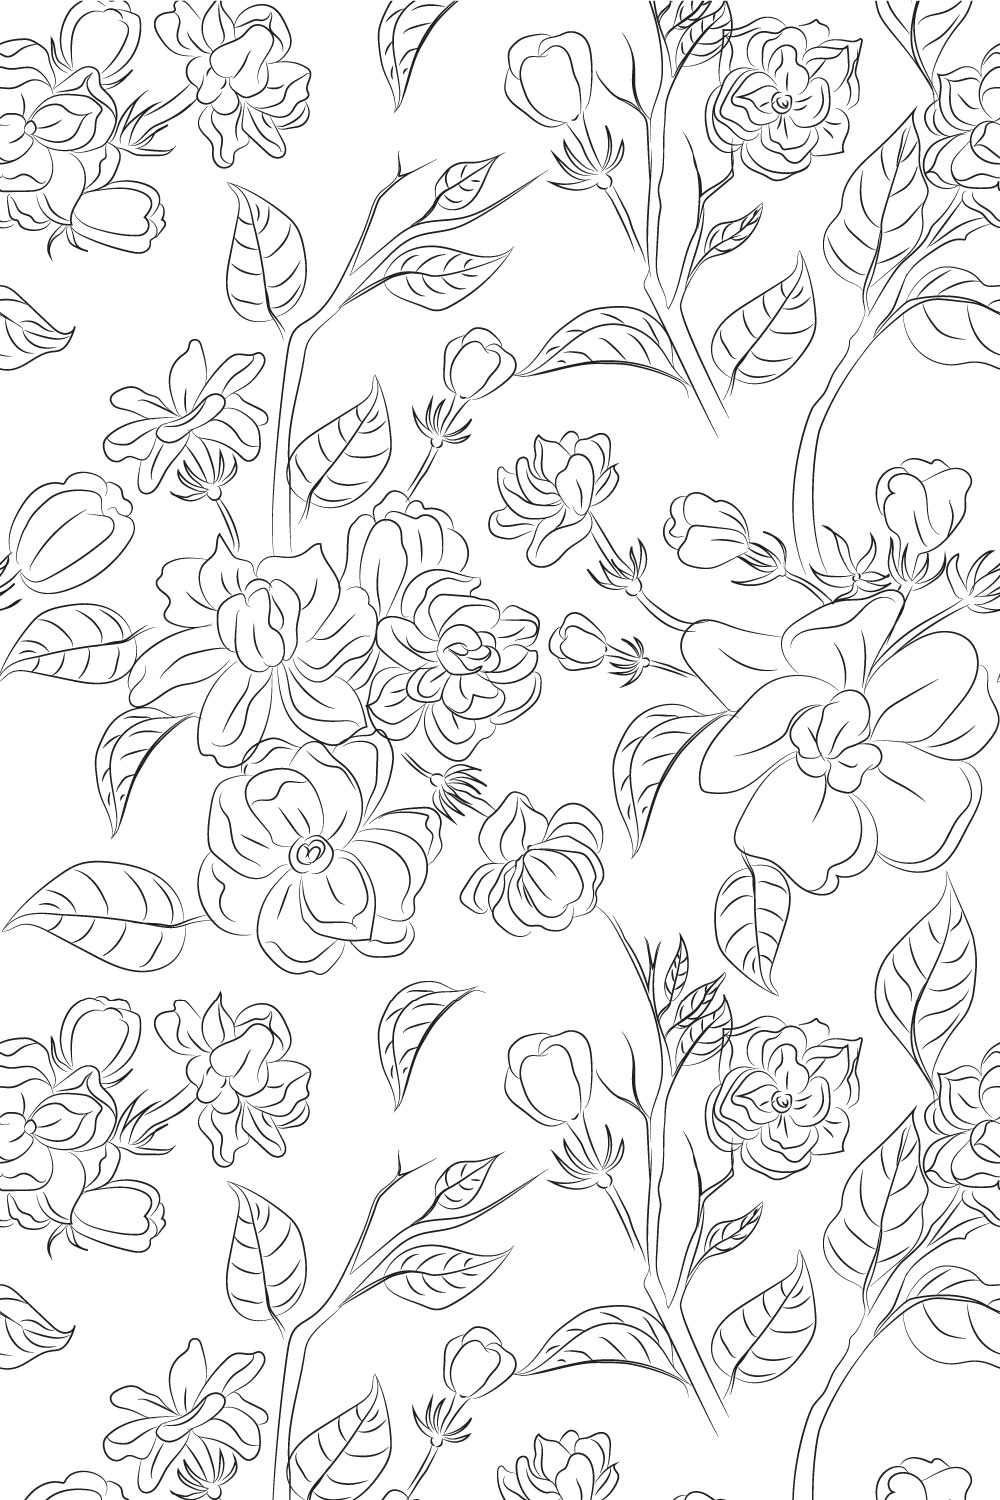 Jasmine Flower Line Art pinterest preview image.